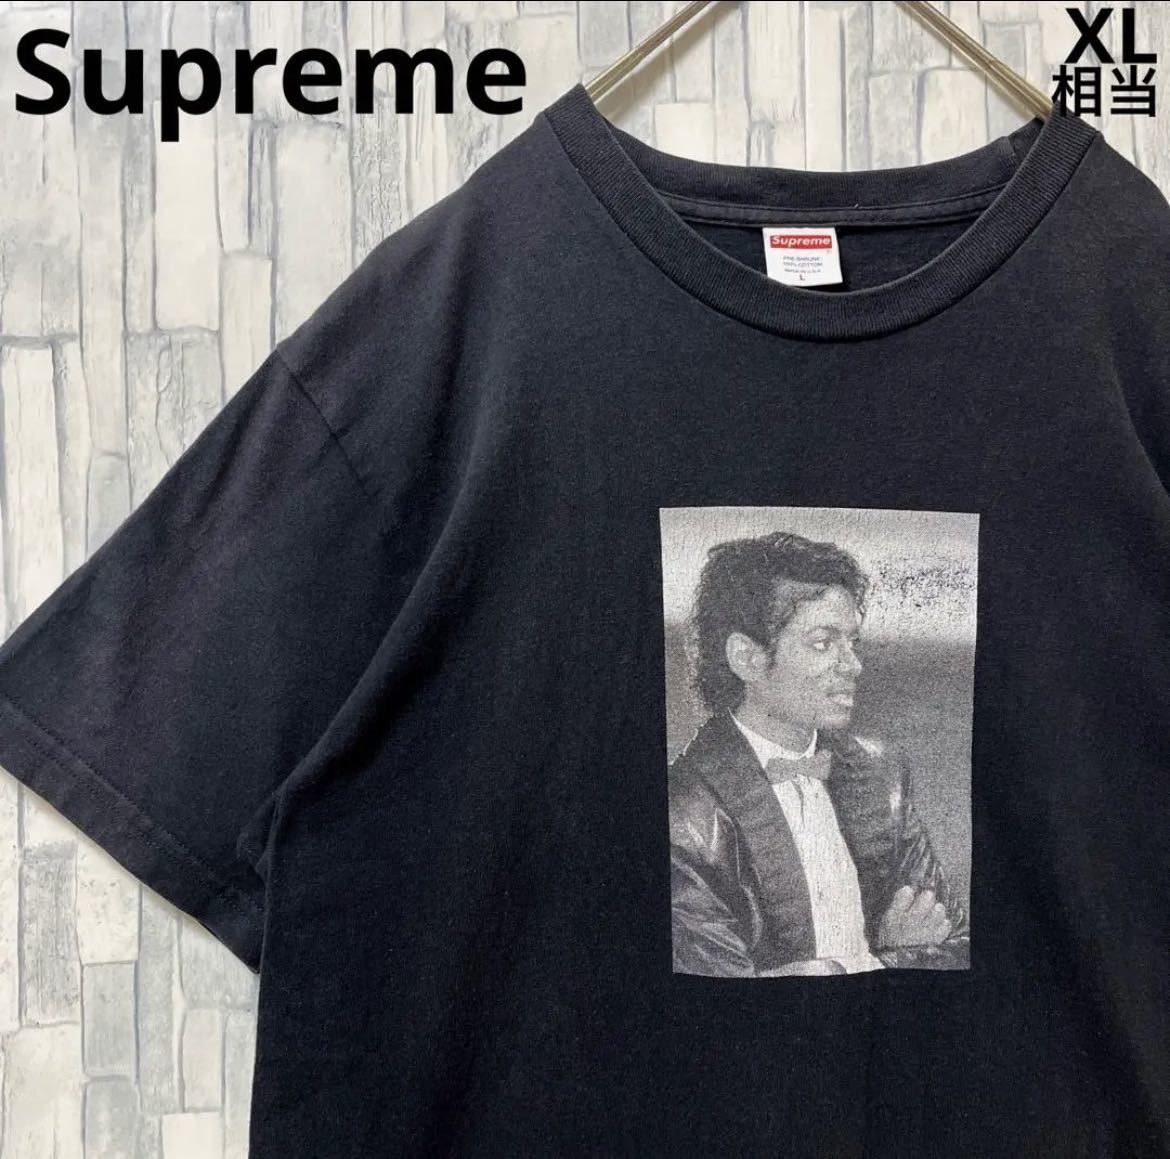 Supreme シュプリーム 2017 17SS マイケルジャクソン 半袖 Tシャツ デカロゴ ビッグロゴ サイズL USA製 ブラック 送料無料_画像1